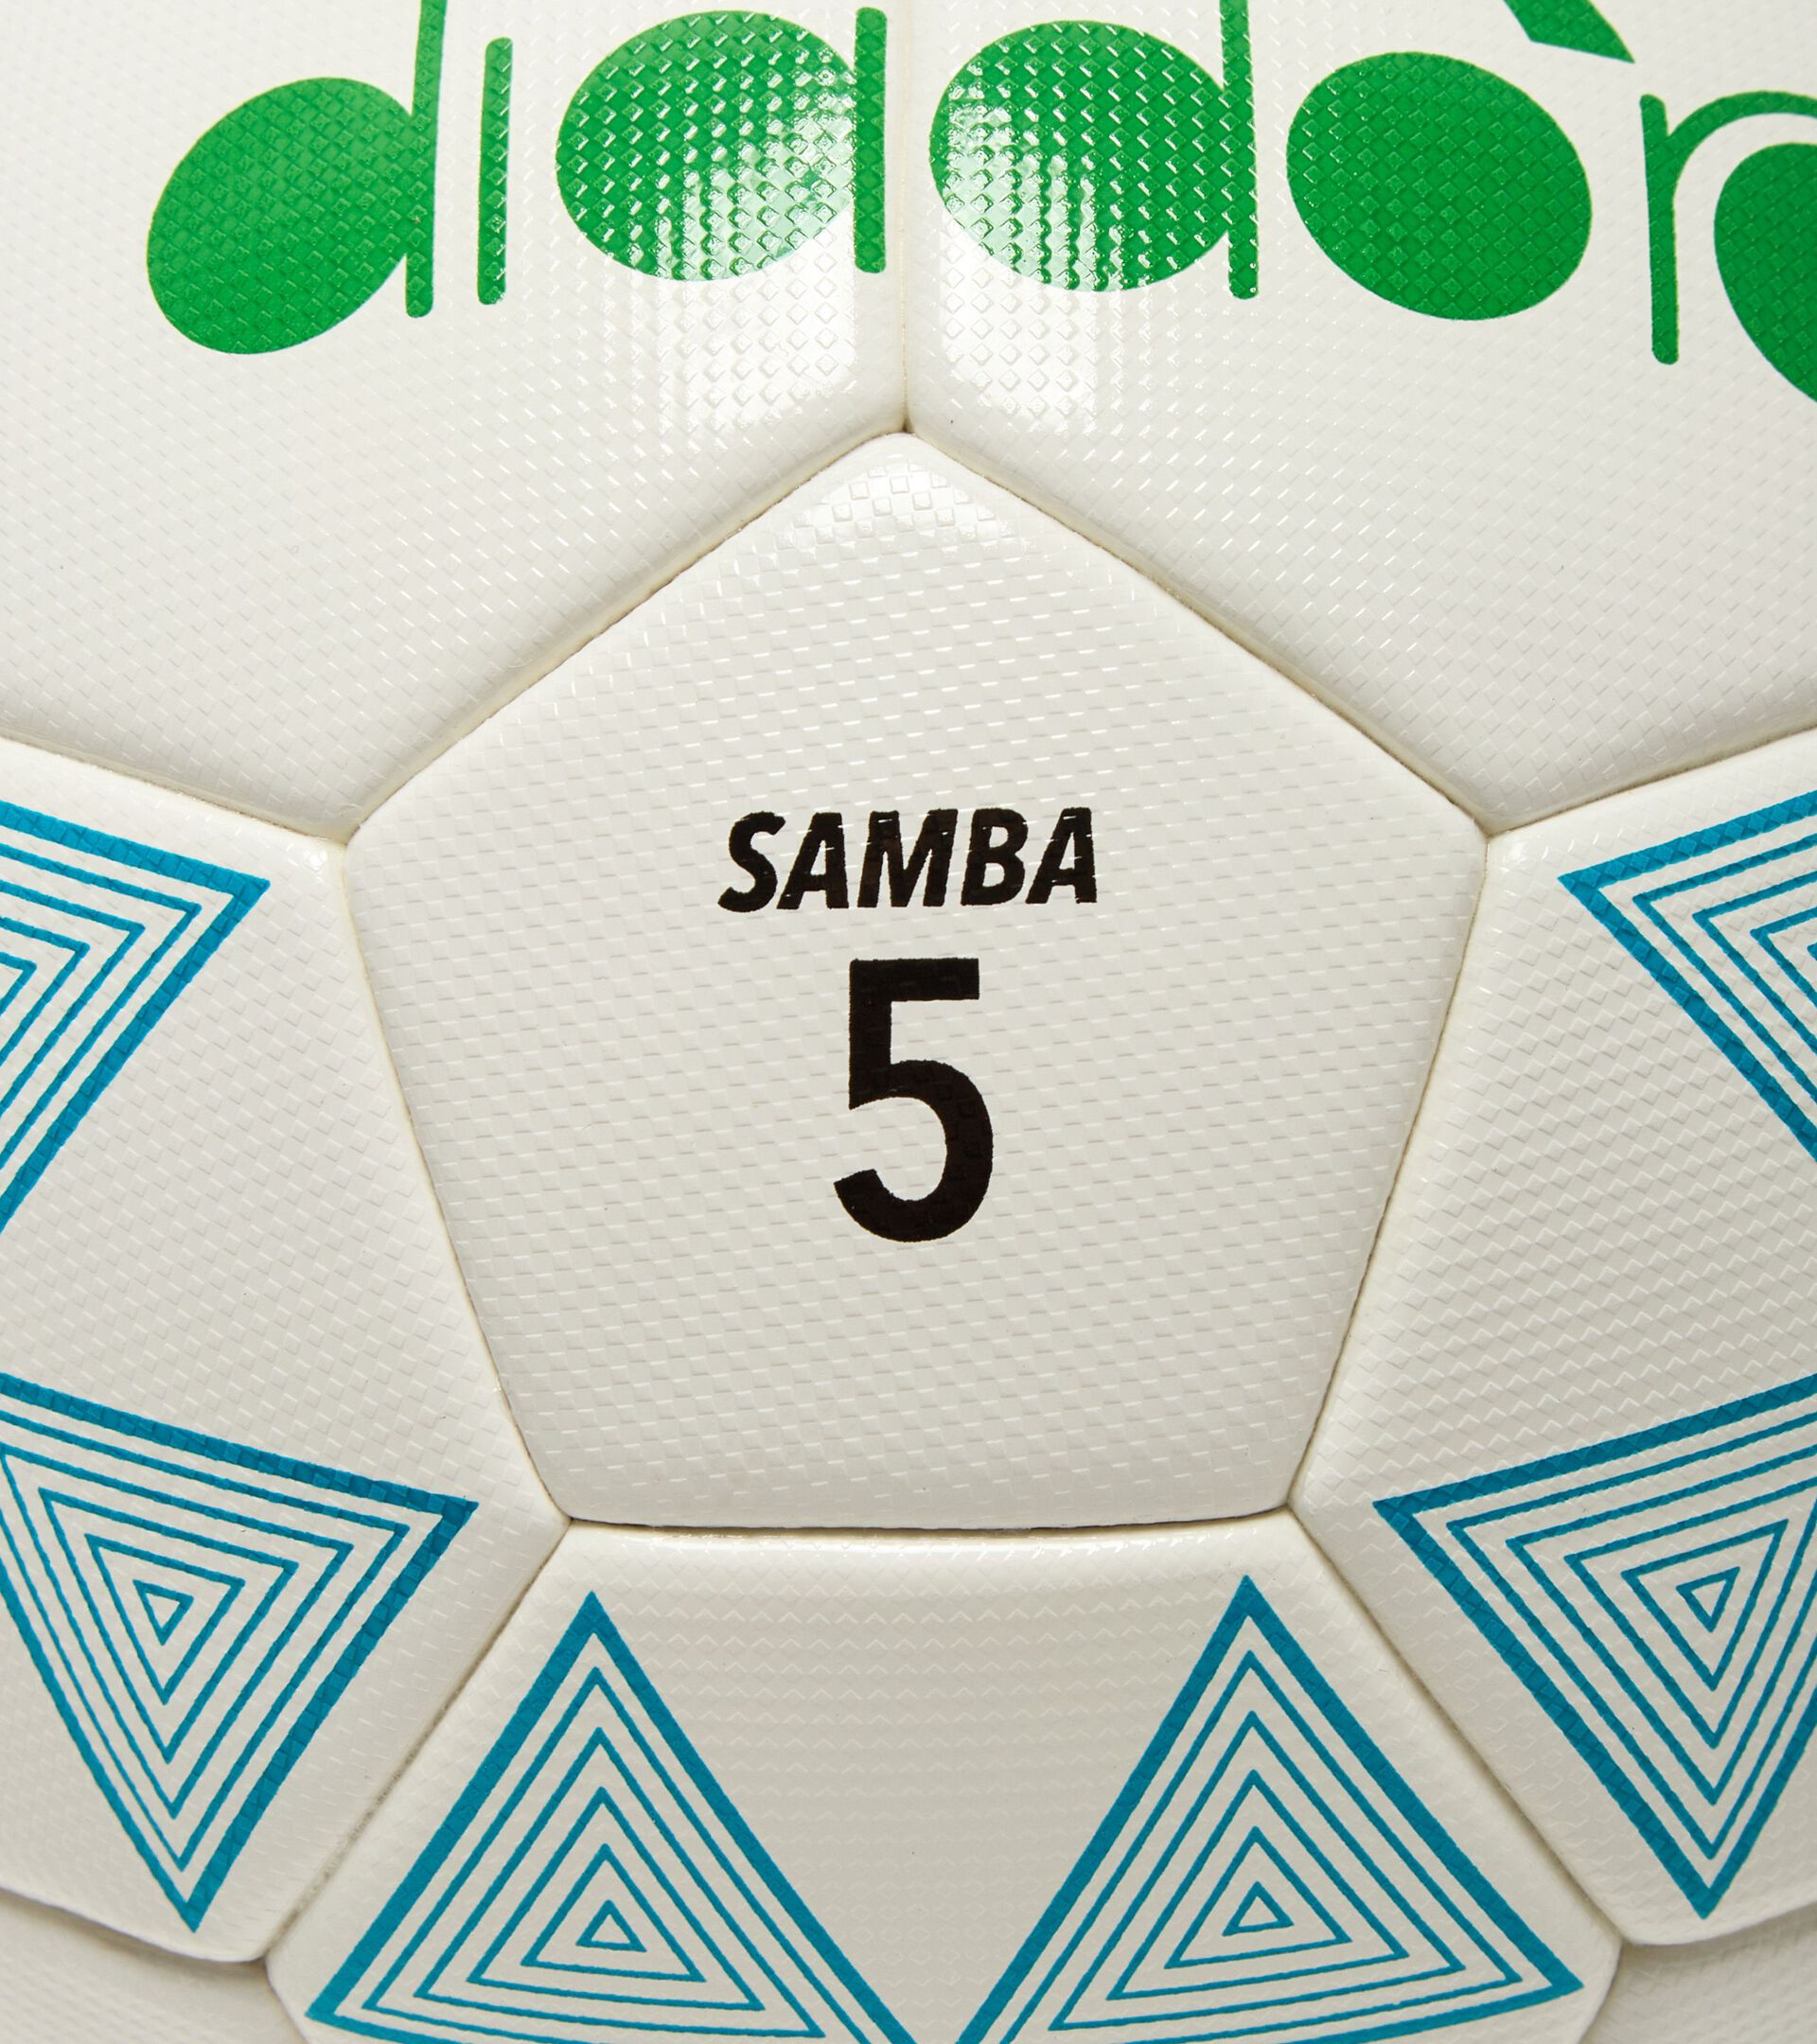 Pallone da calcio - taglia 5 SAMBA 5 BIANCO/TURCHESE - Diadora